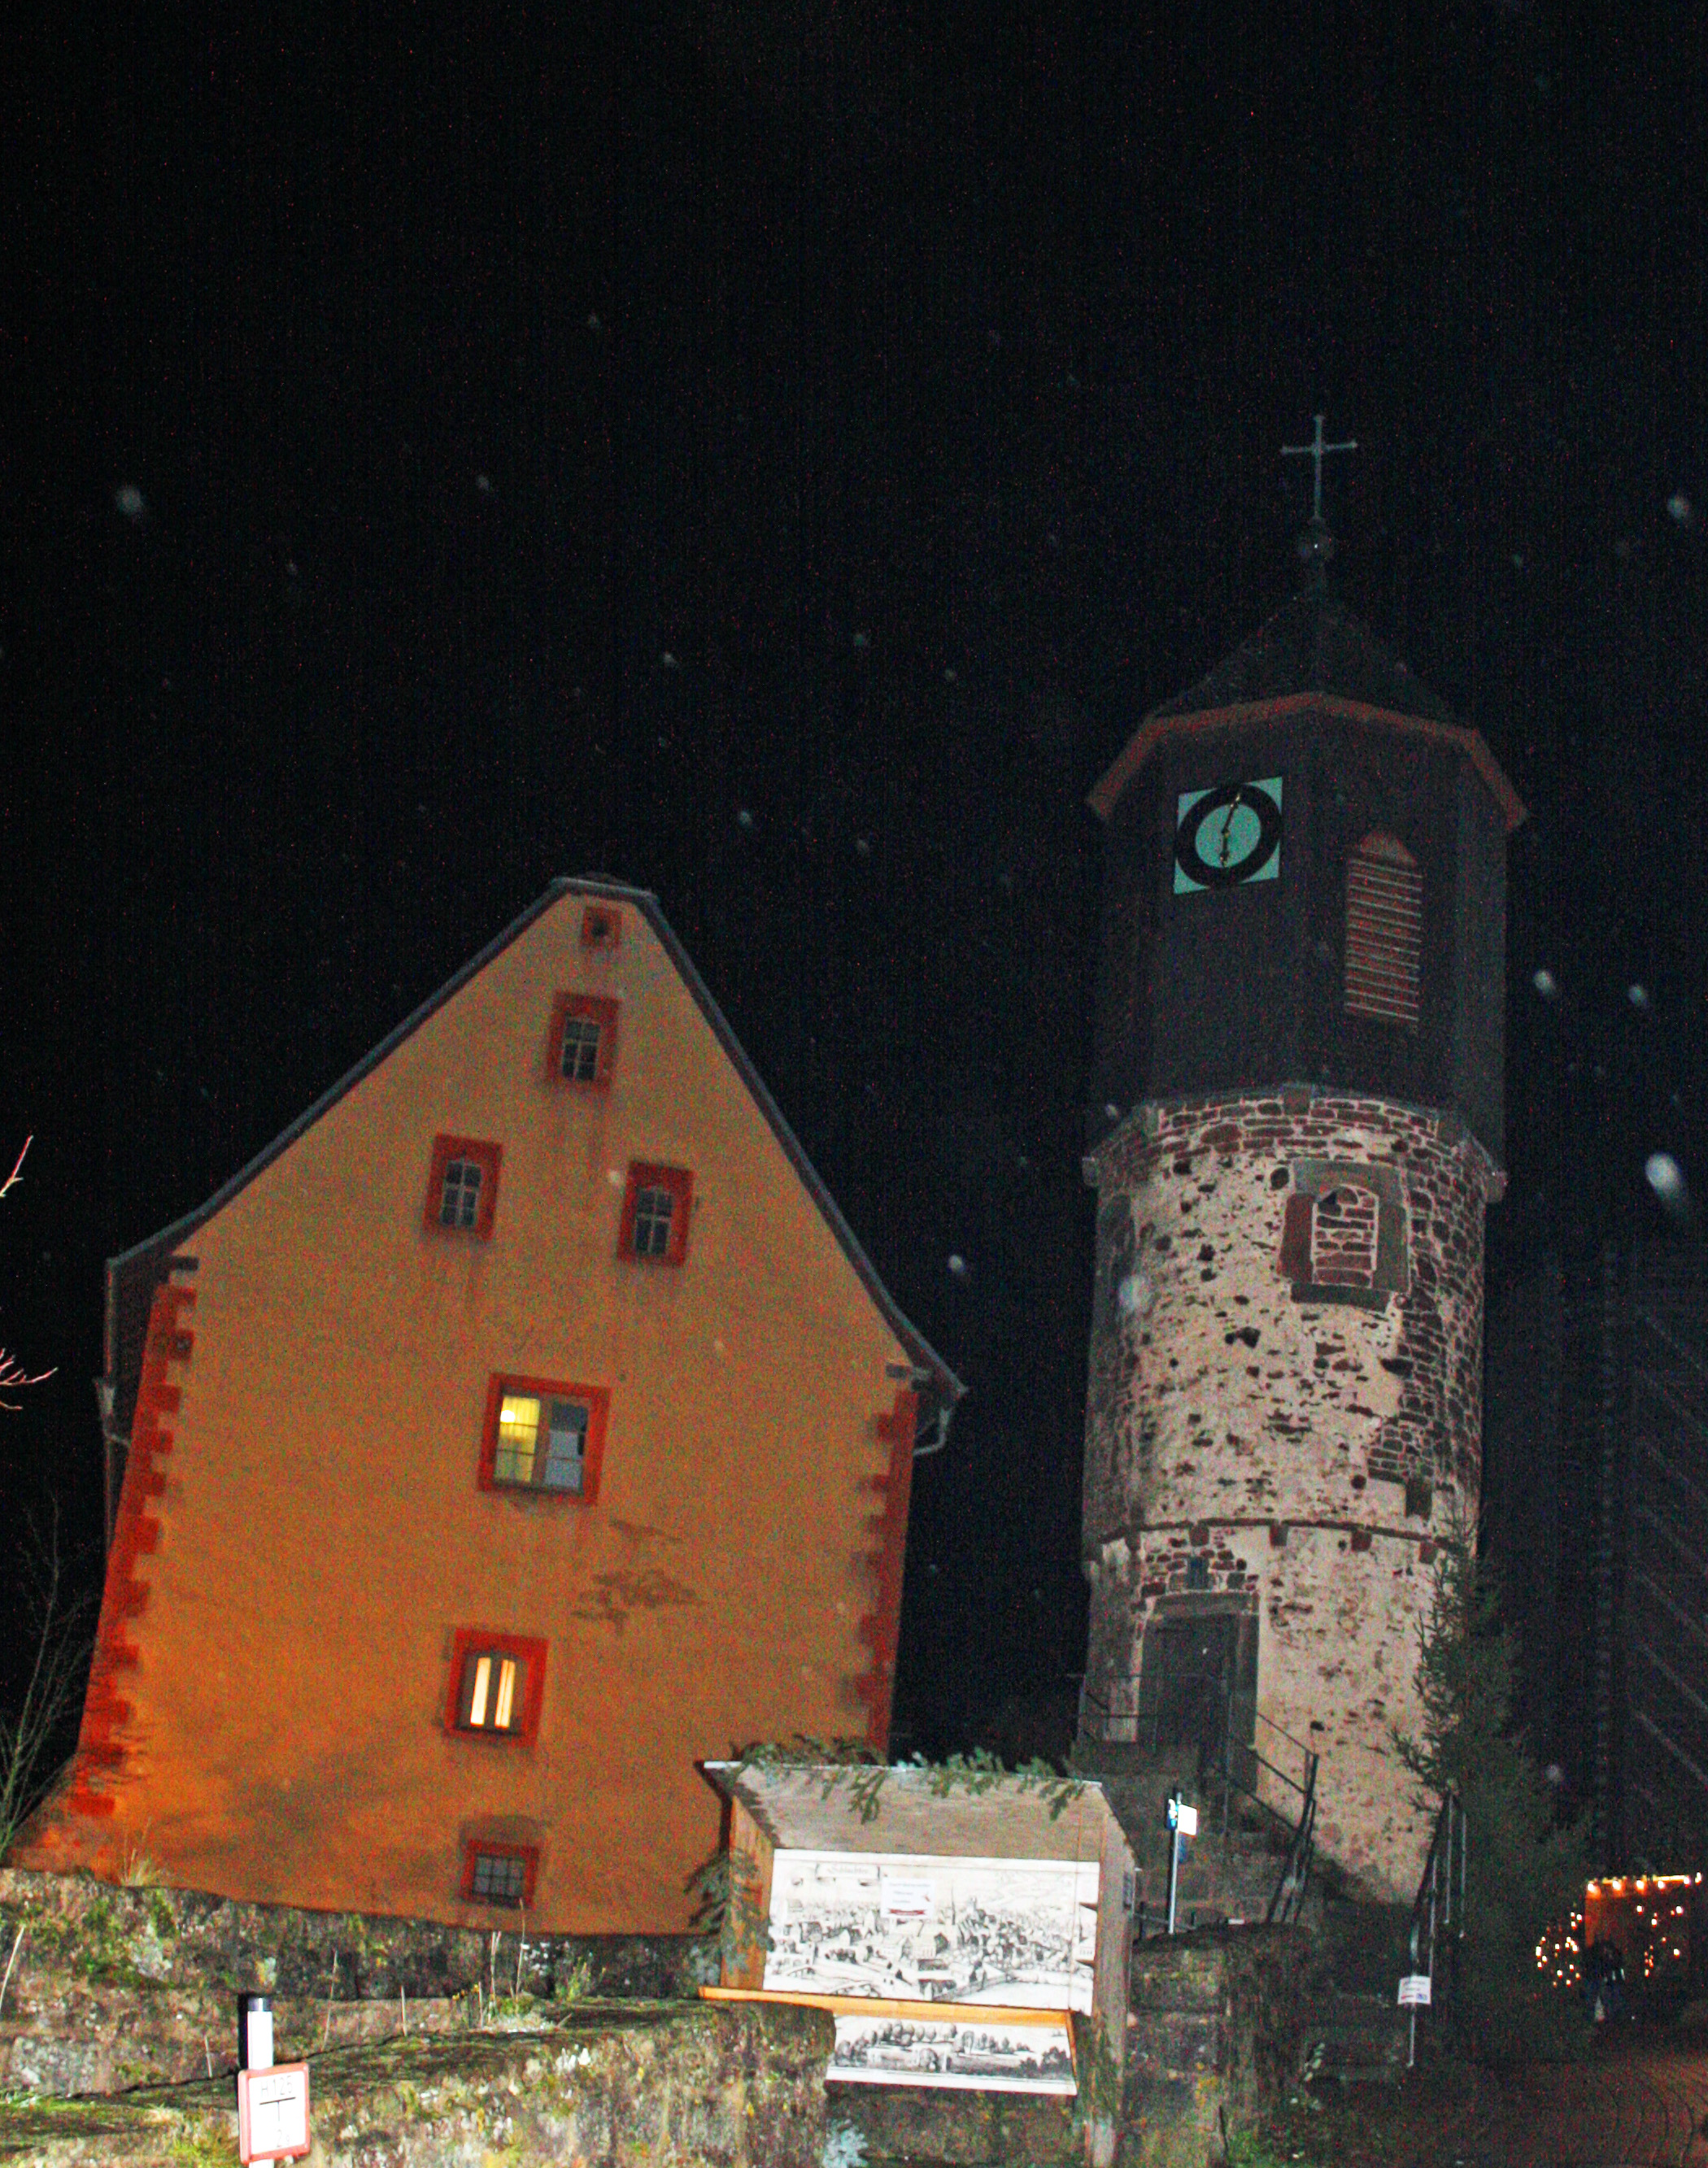 Uhrturm am Hofeingang der Burg Schwarzenfels.
